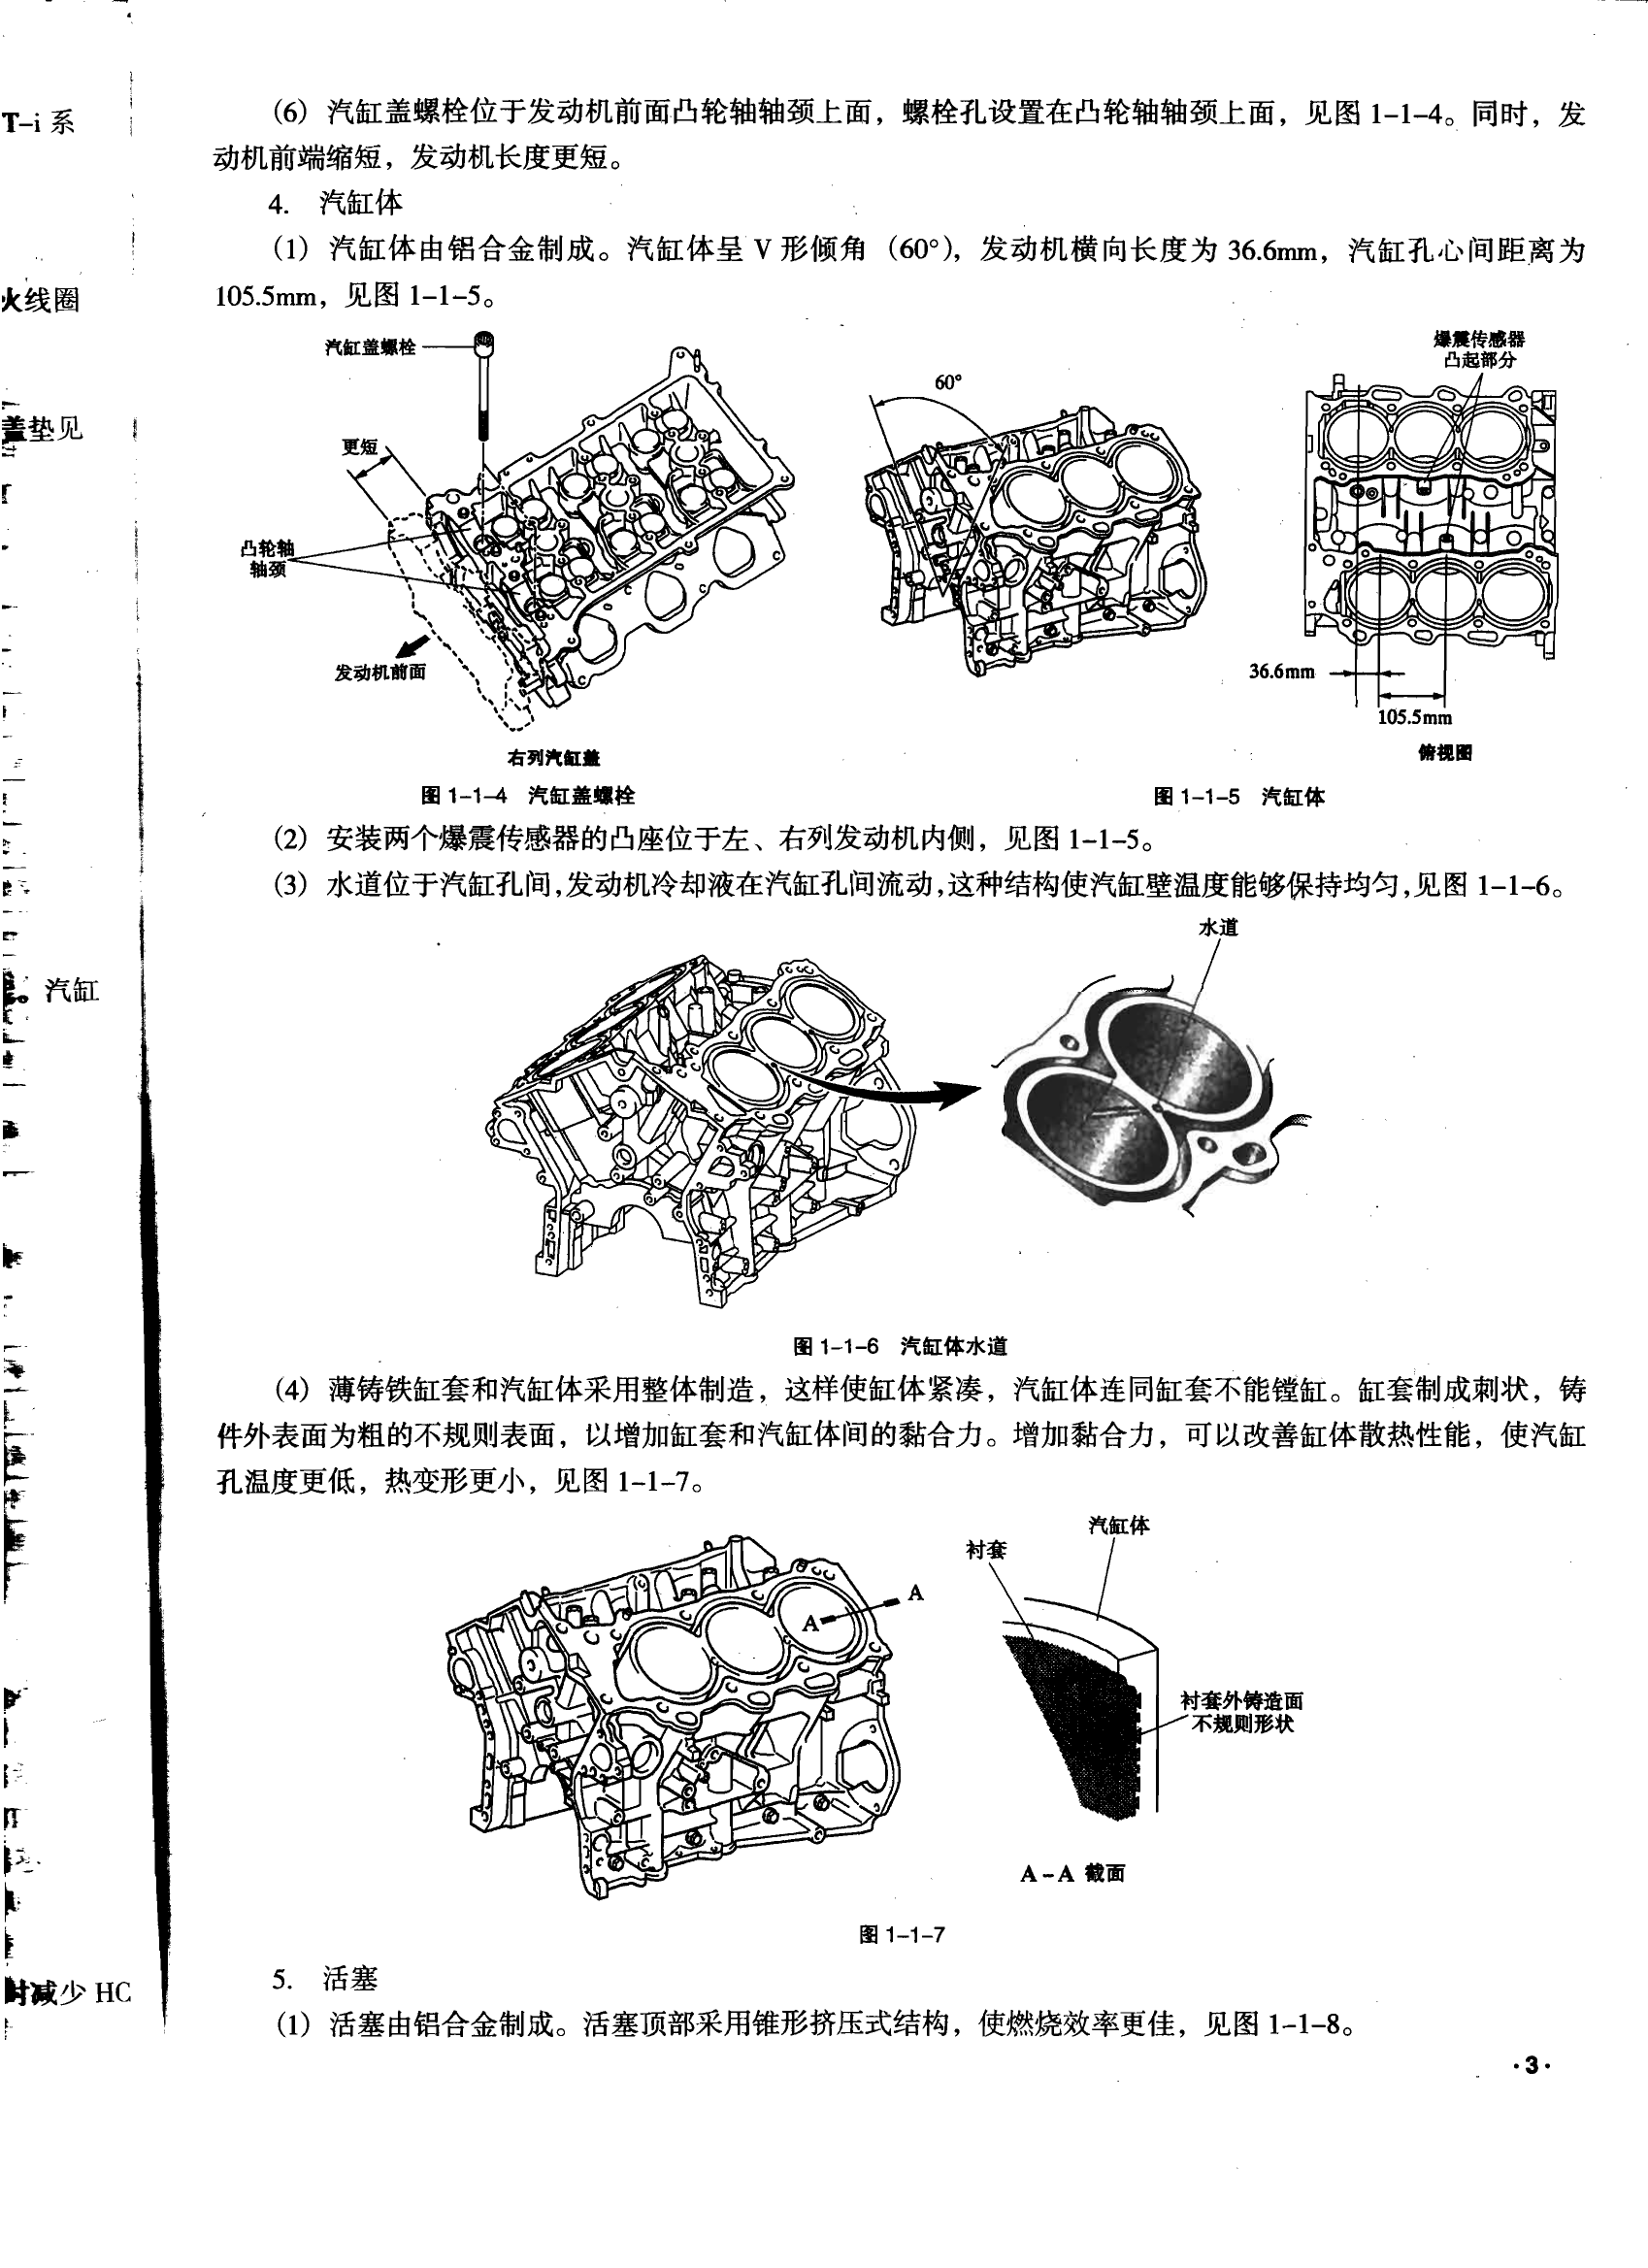 丰田霸道4000和陆地巡洋舰4700汽车维修手册 完全版 (2).pdf-第4页.png